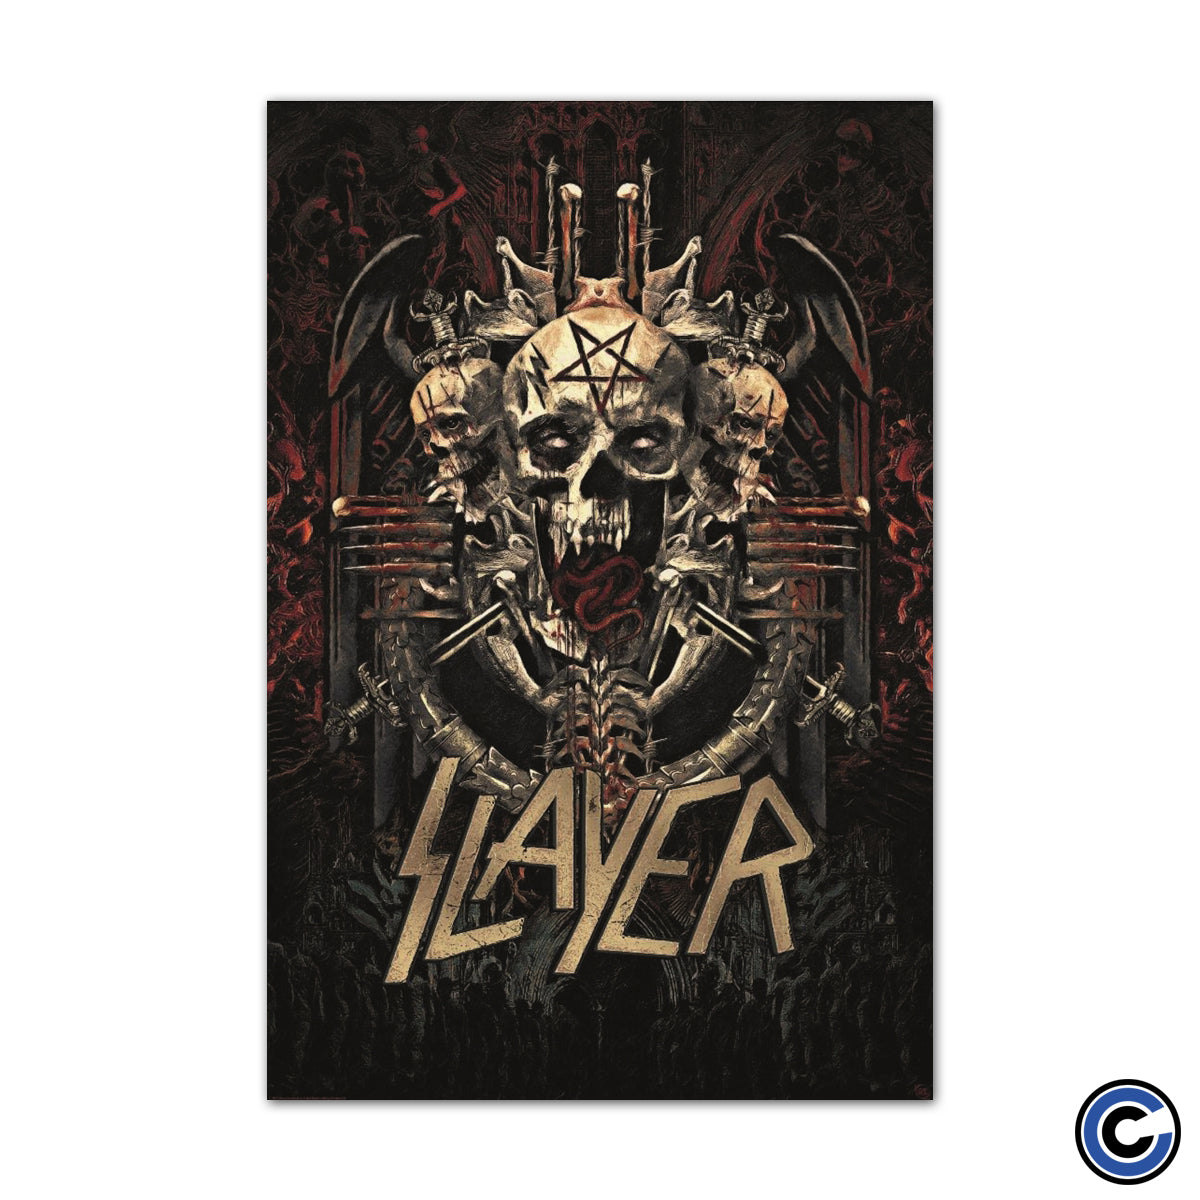 Slayer "Skullagram" Poster